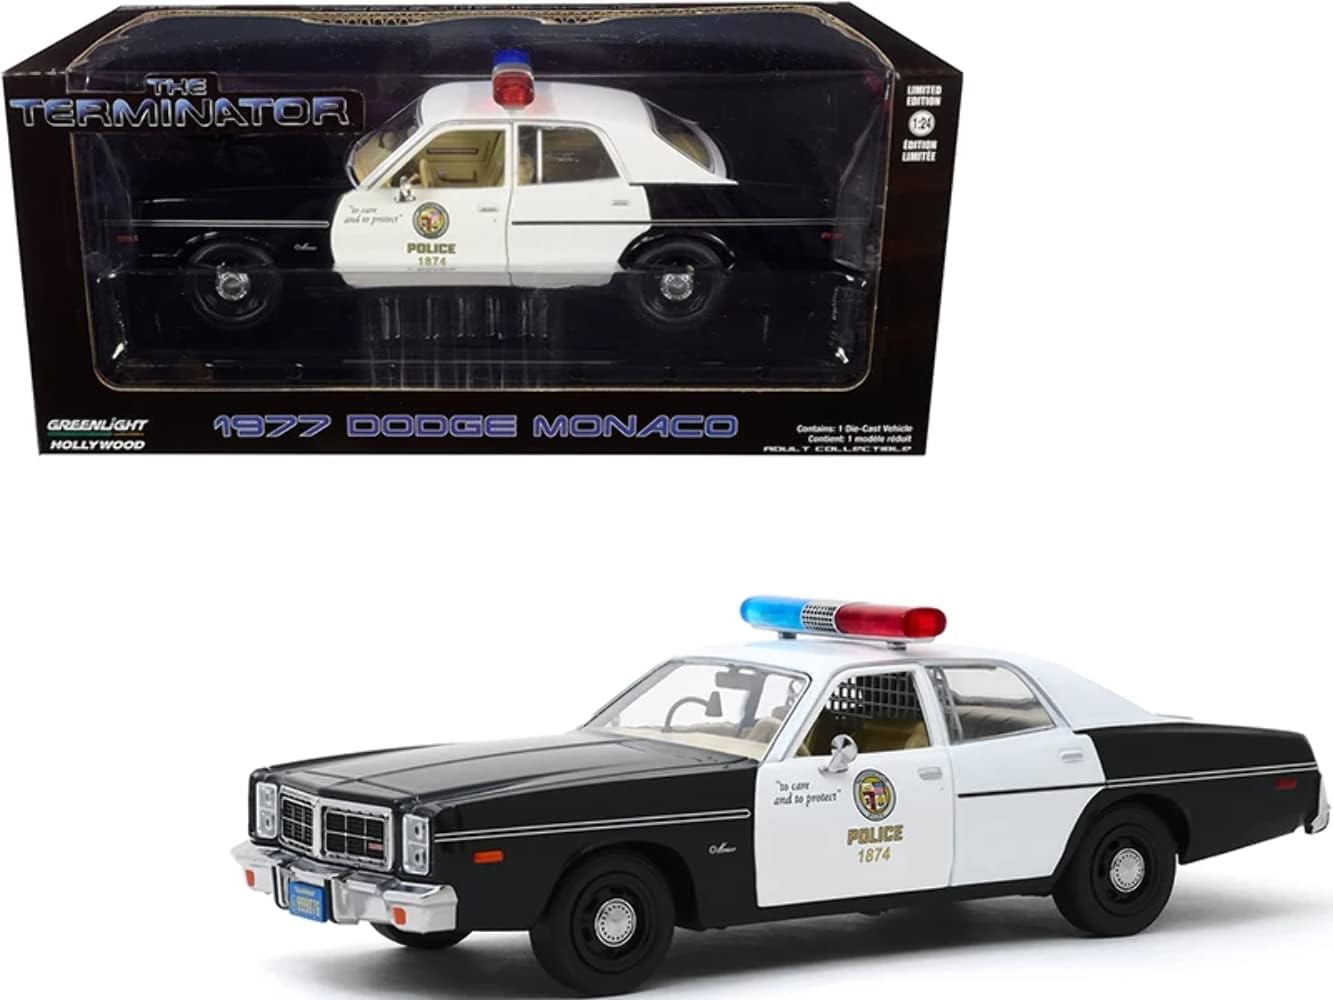 1977 dodge monaco metropolitan police diecast model car review